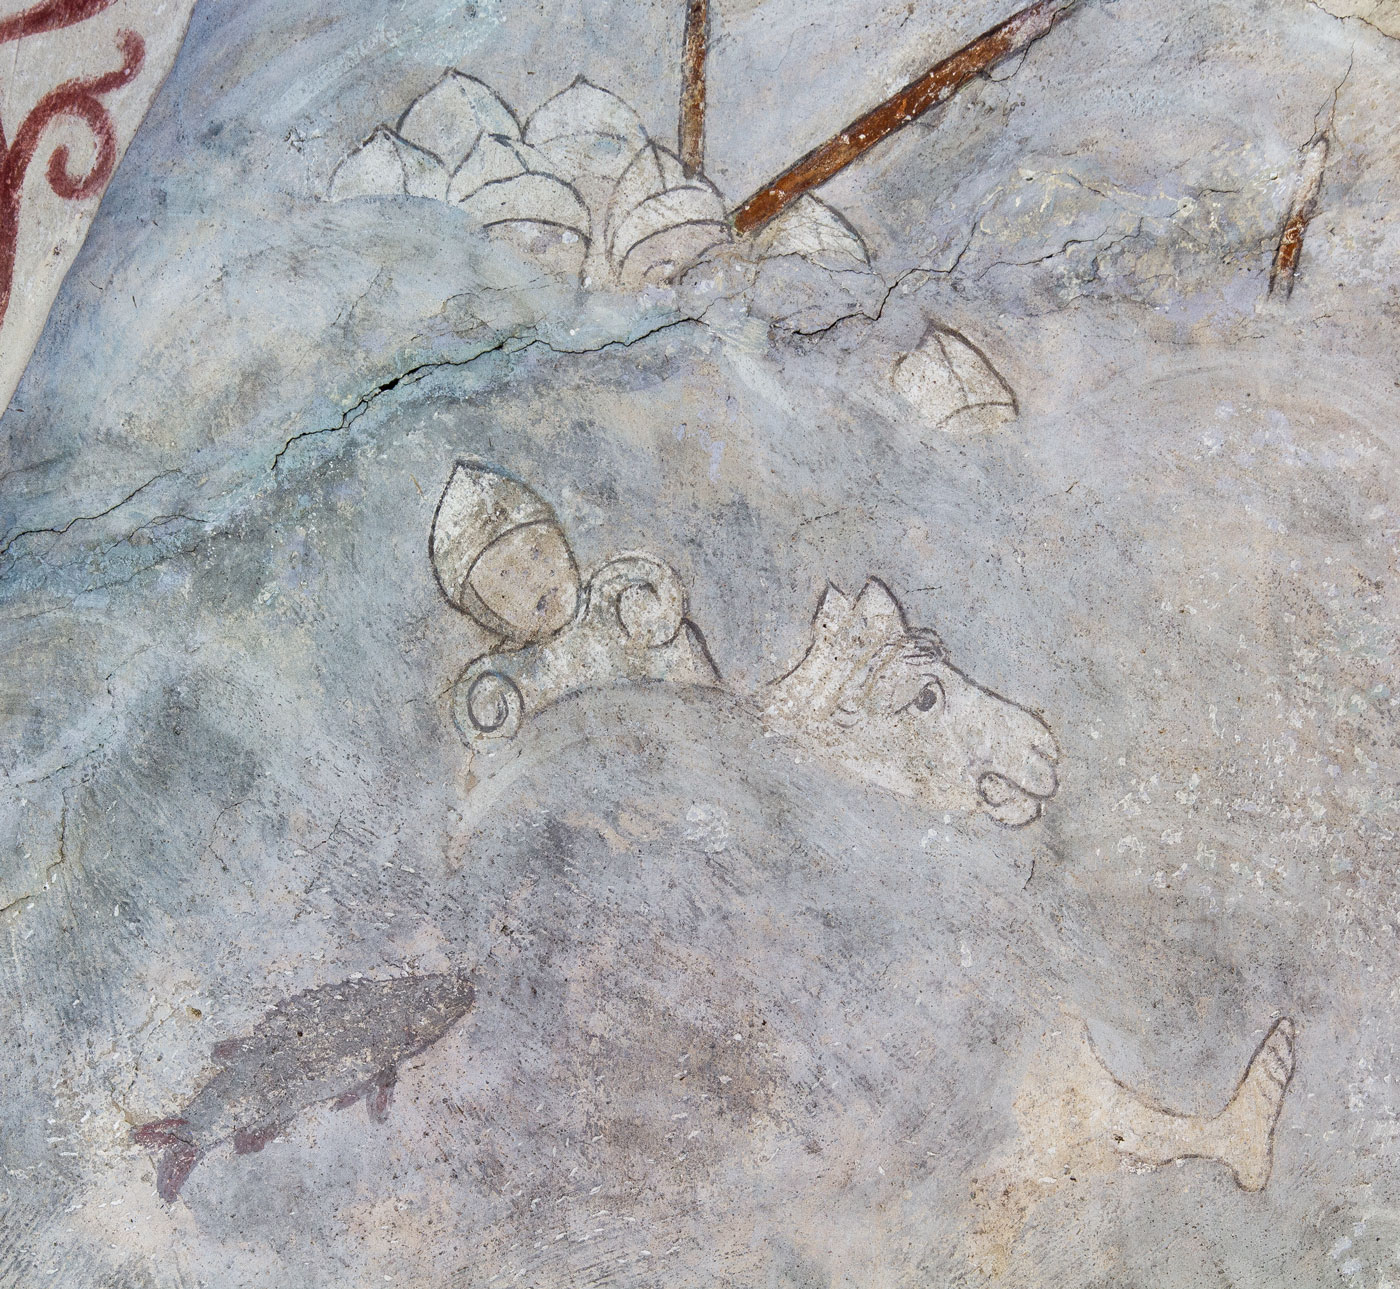 Detalj ur Israeliternas vandring genom Röda havet där faraos här syns drunkna - Ösmo kyrka